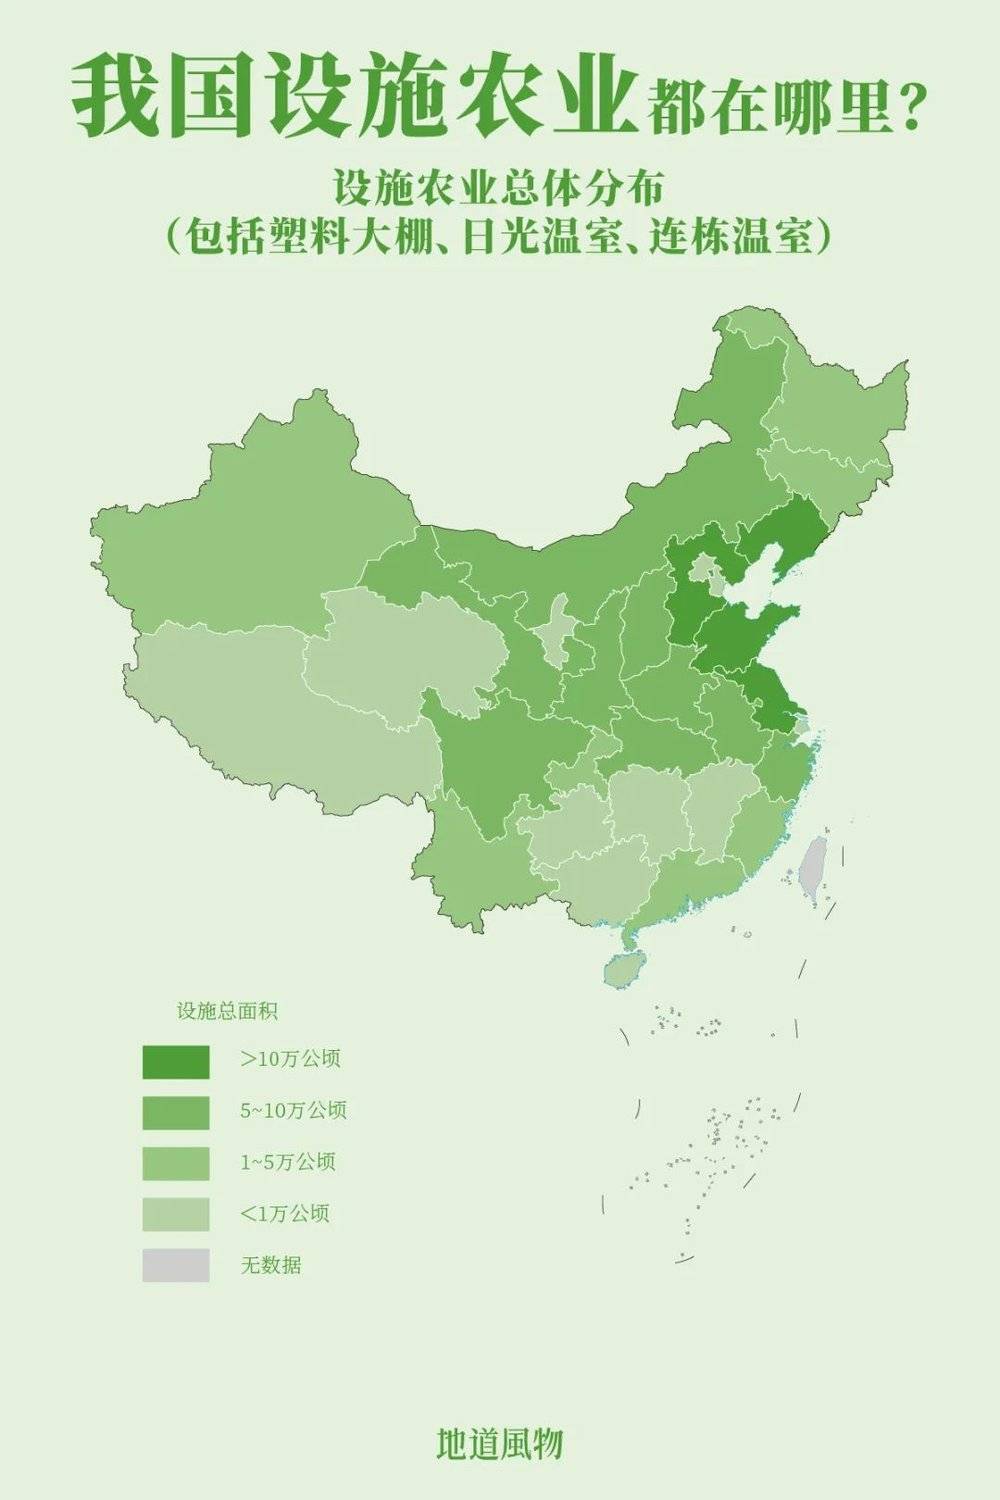 全国设施农业分布，环渤海与黄淮海地区占60%以上。制图/孙璐<br>